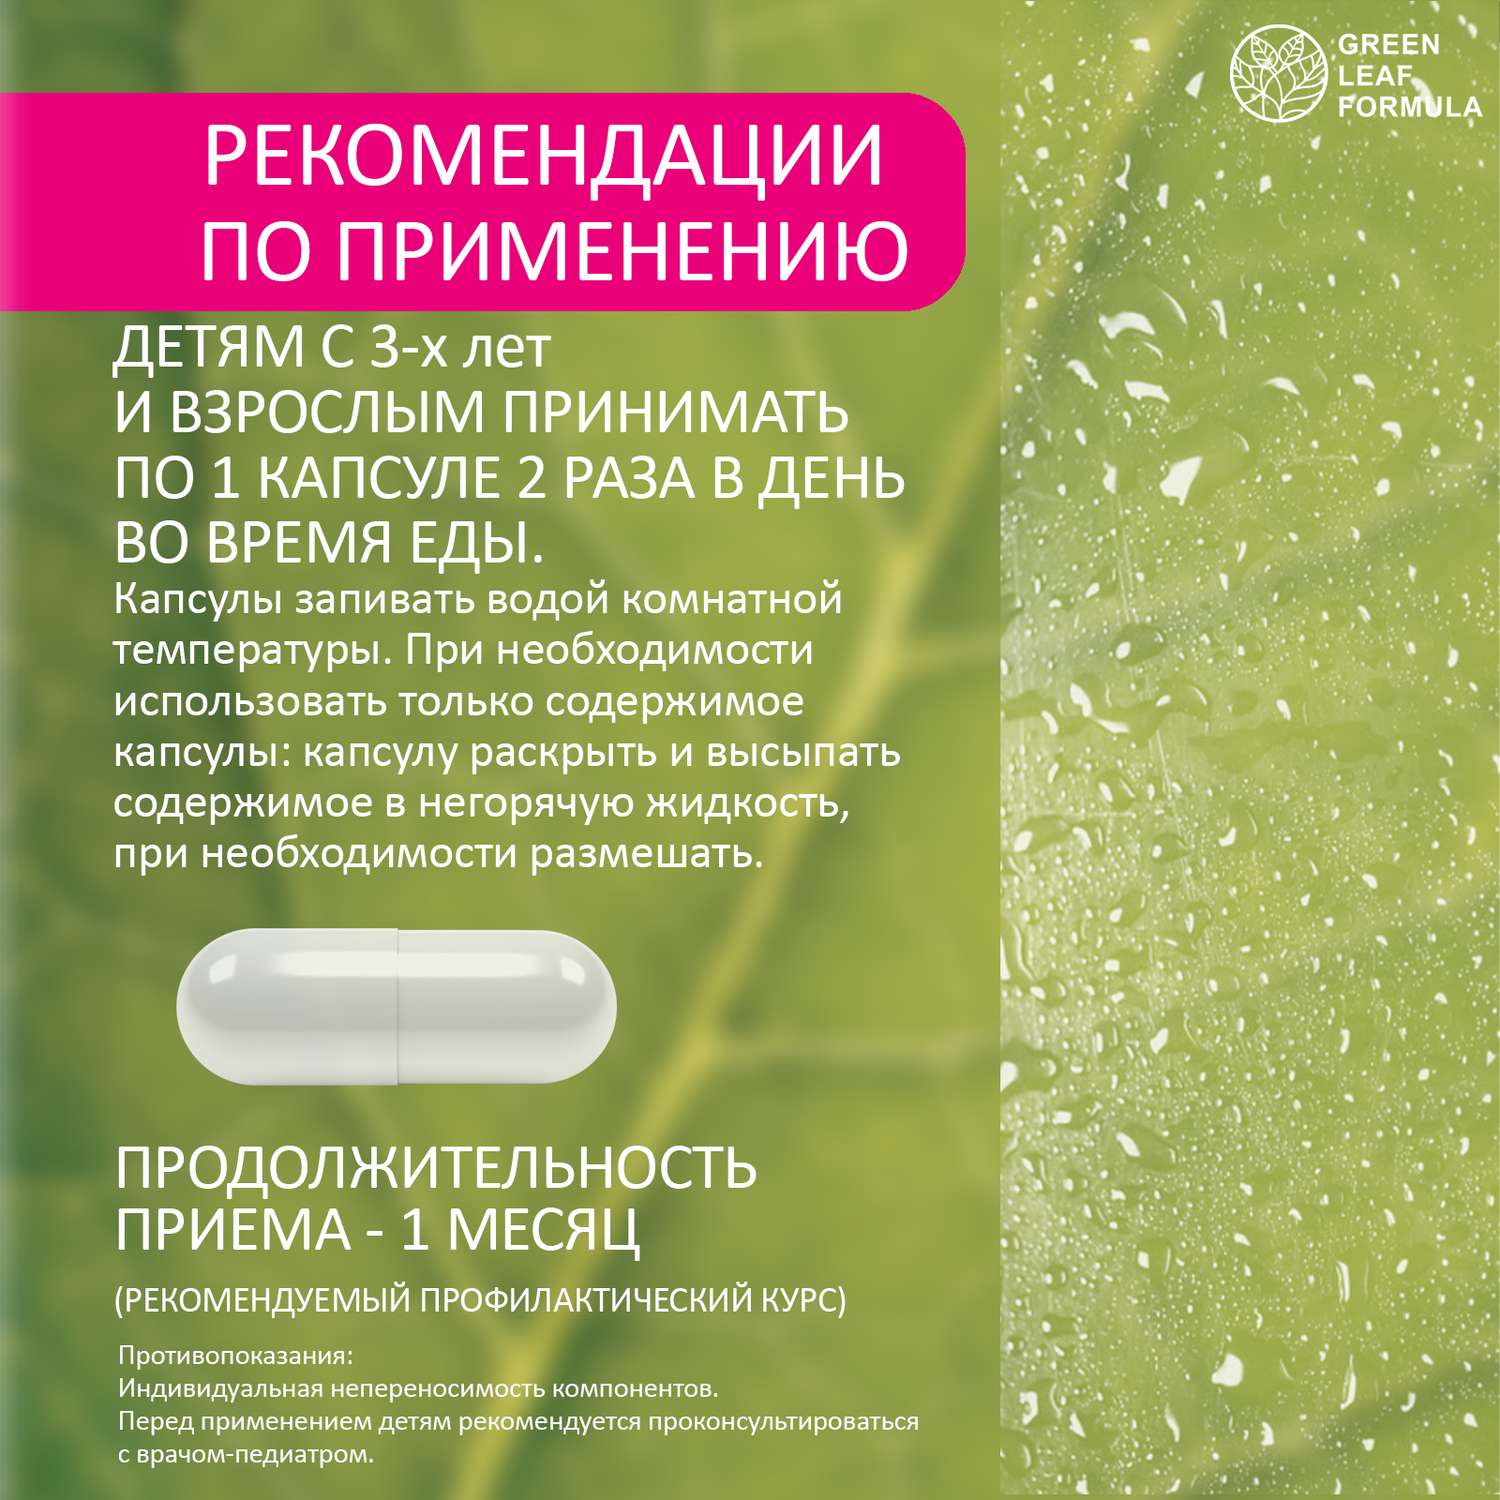 Детский пробиотик Green Leaf Formula витаминный комплекс для детей от 3 лет 60 капсул - фото 9